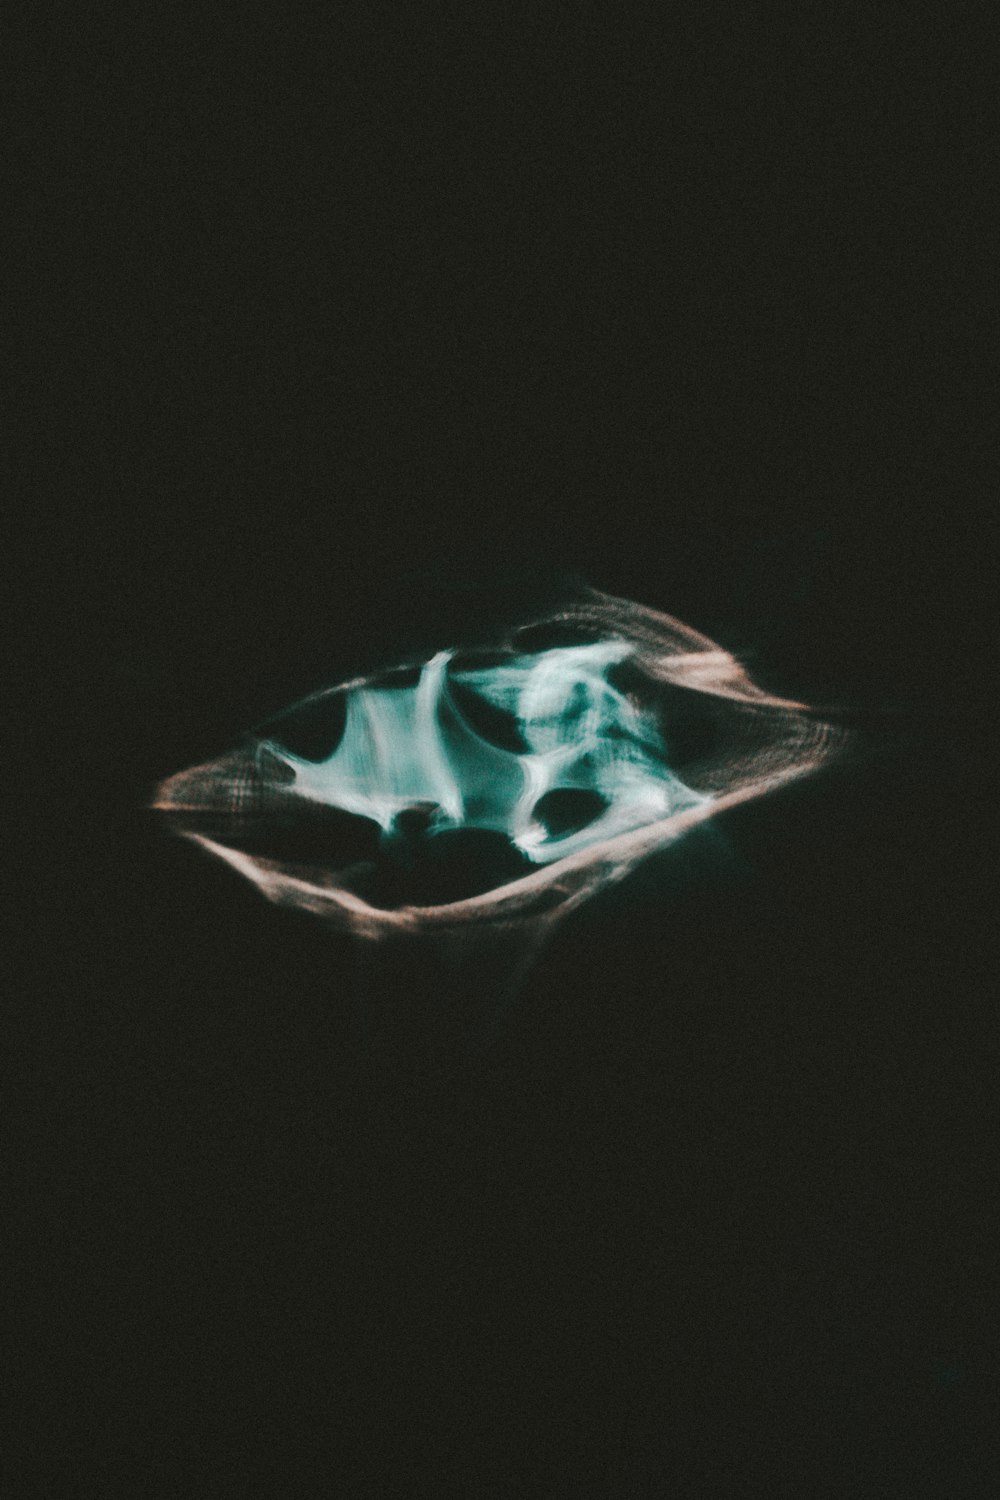 Una imagen borrosa de una hoja en la oscuridad